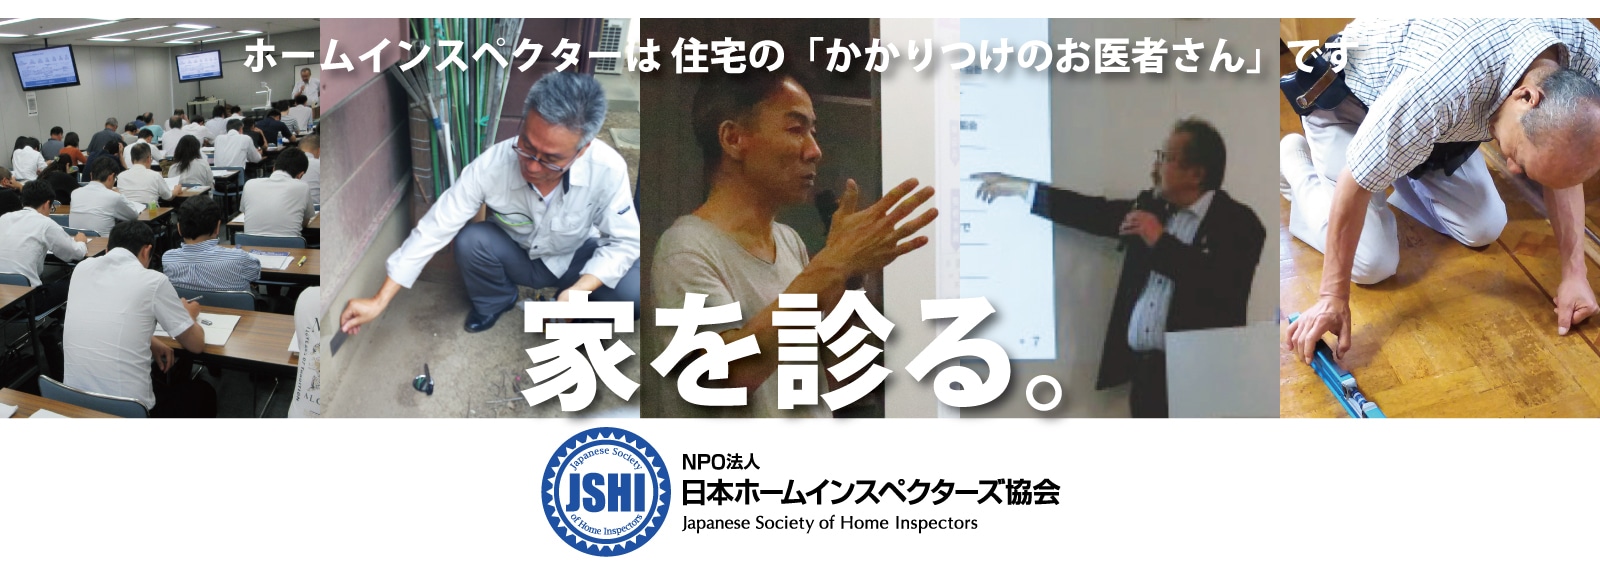 NPO法人 日本ホームインスペクターズ協会